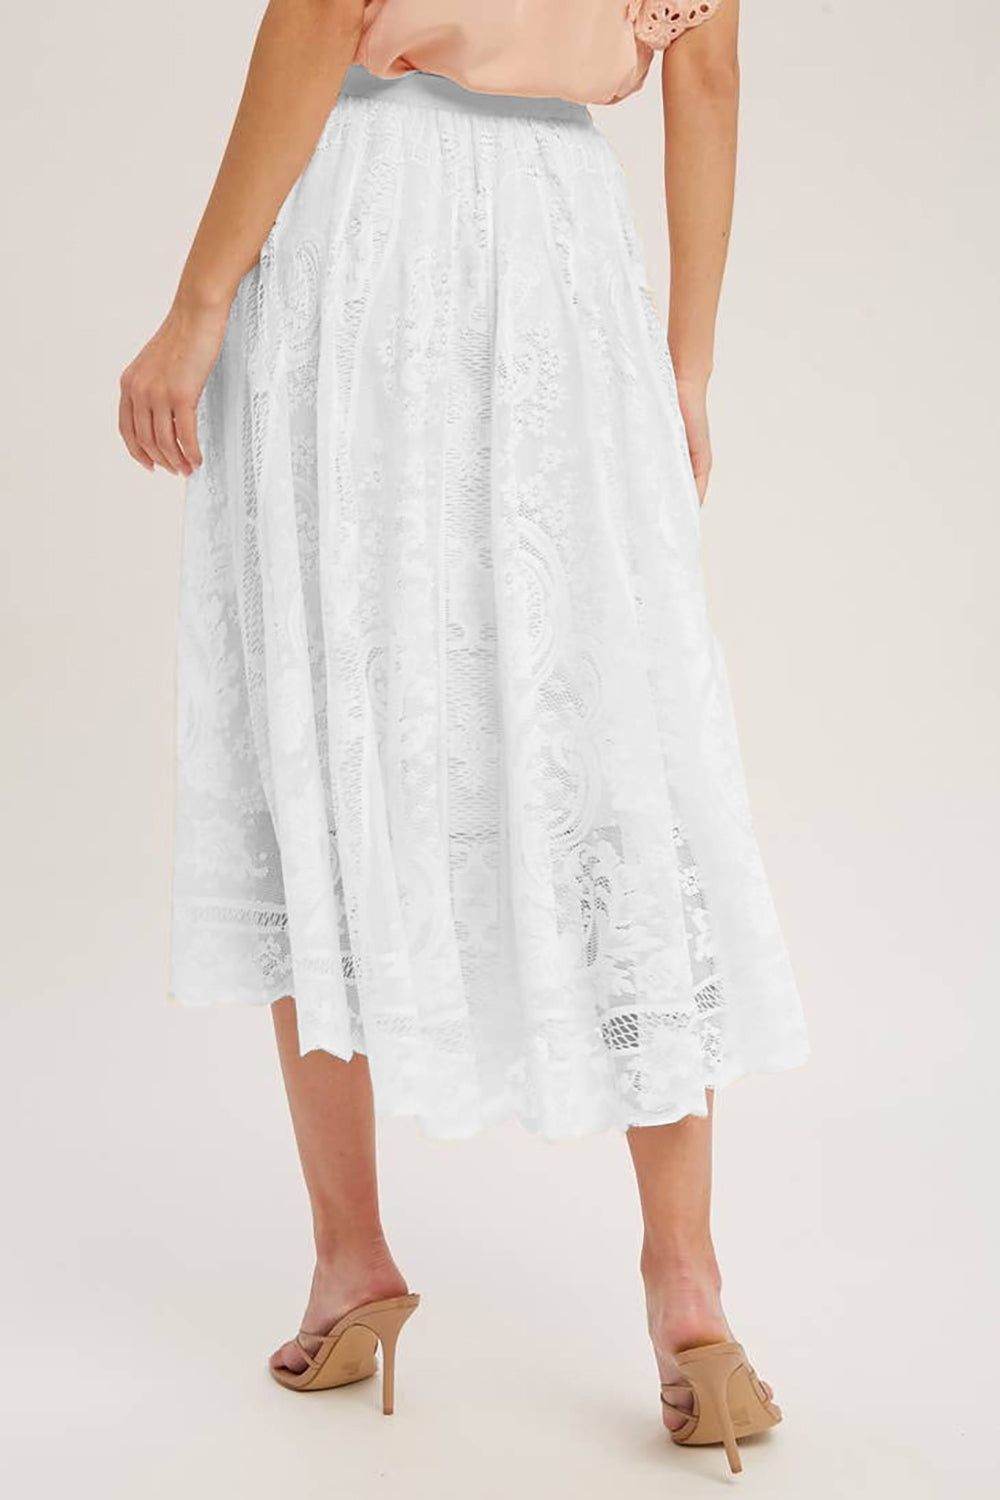 TEEK - Lace High Waist Midi Skirt SKIRT TEEK Trend   